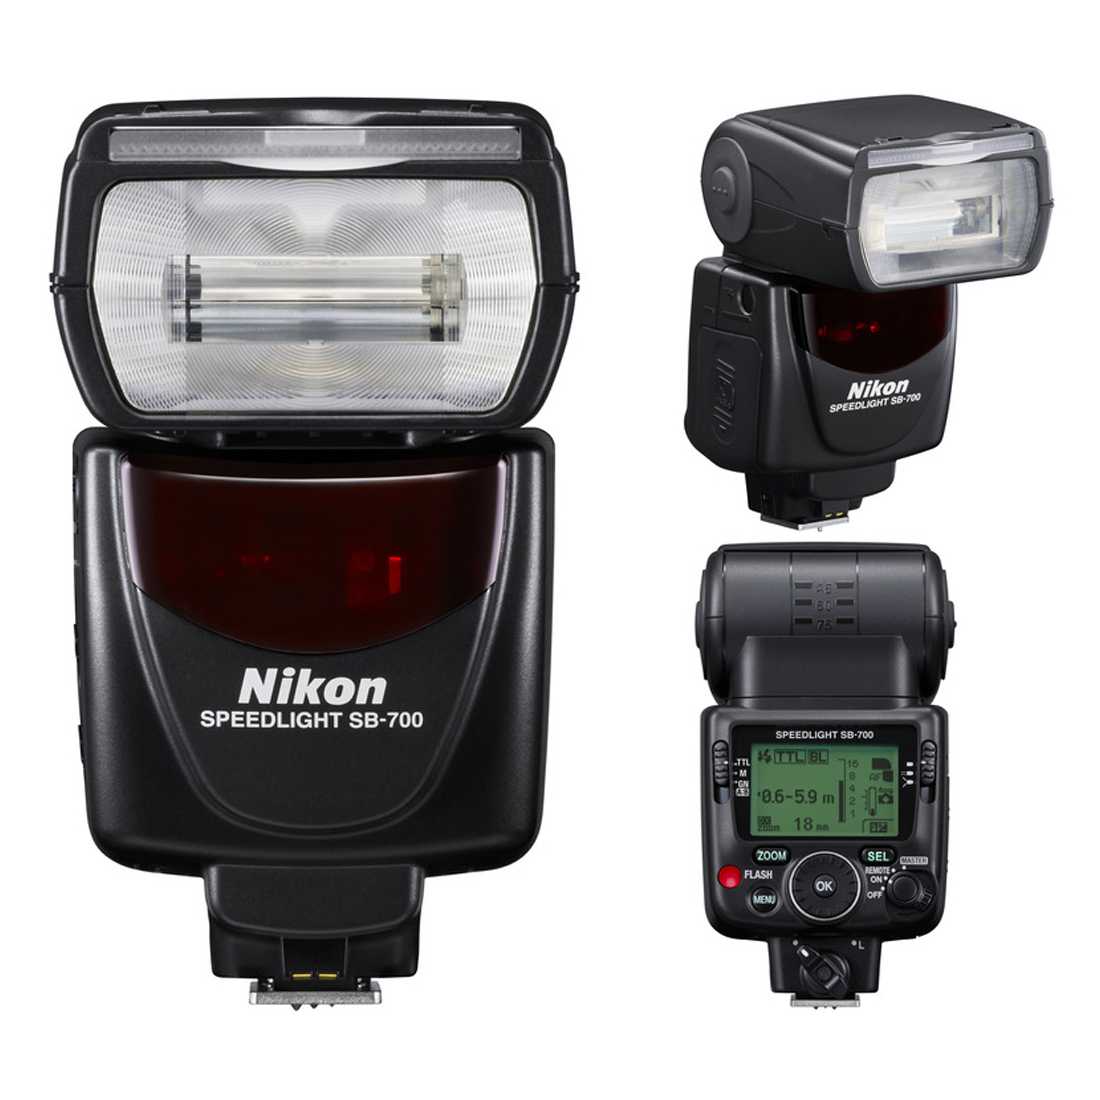 Фотовспышка nikon speedlight sb-700 (fsa03901) купить от 19990 руб в самаре, сравнить цены, отзывы, видео обзоры и характеристики